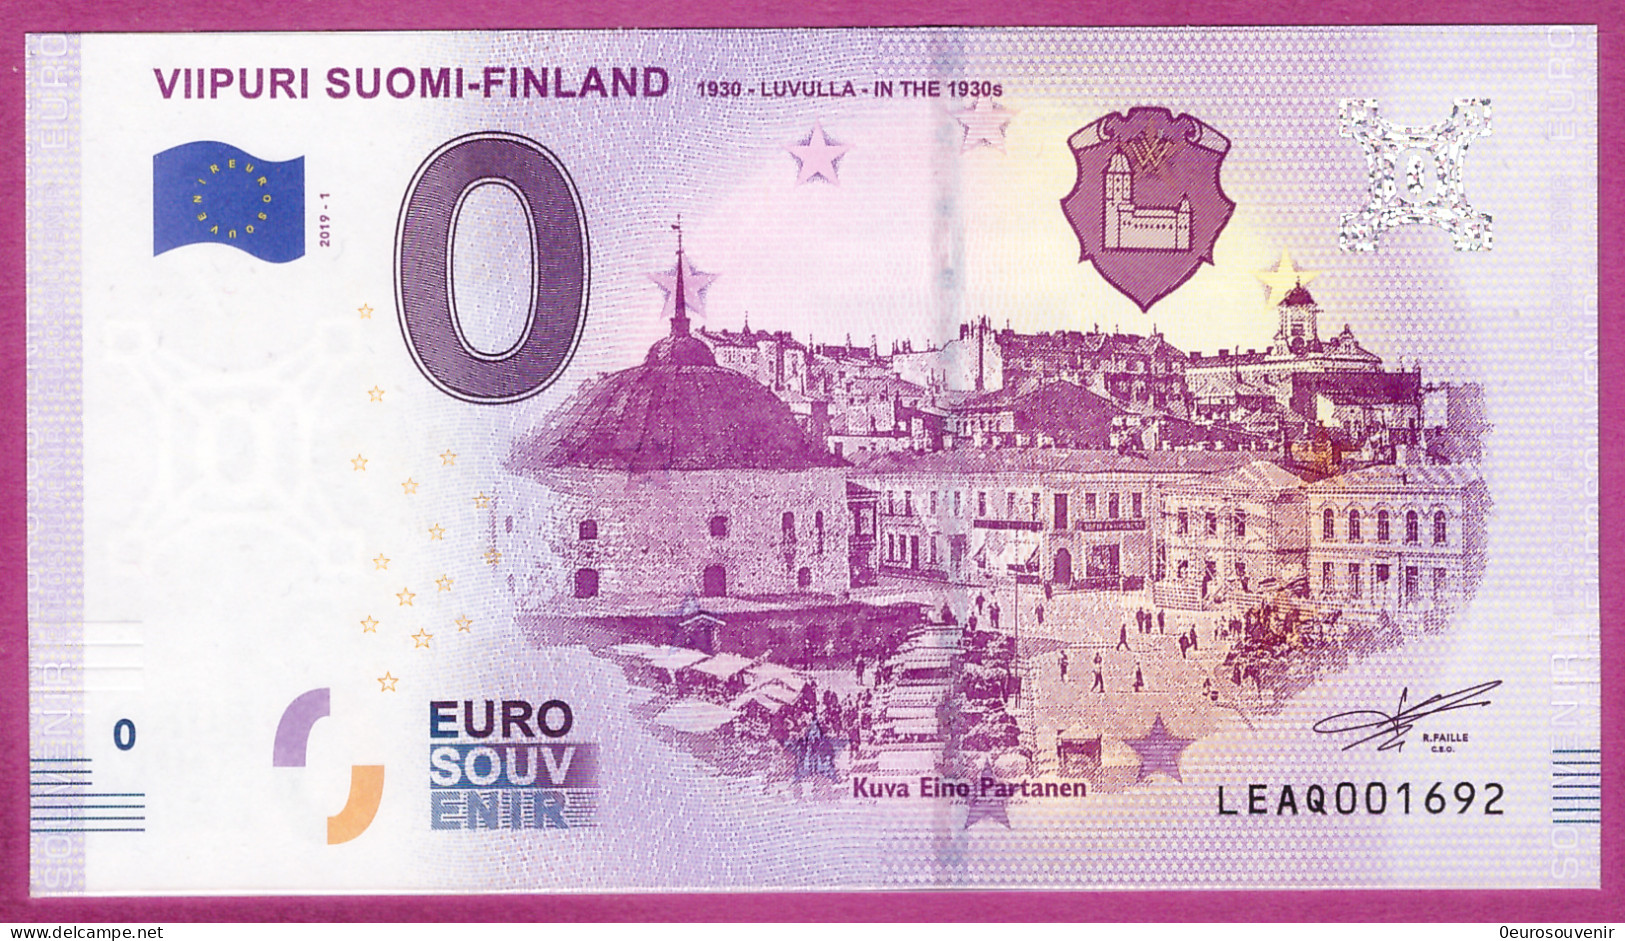 0-Euro LEAQ 2019-1 VIIPURI SUOMI-FINLAND 1930-LUVULLA-IN THE 1930s - Essais Privés / Non-officiels